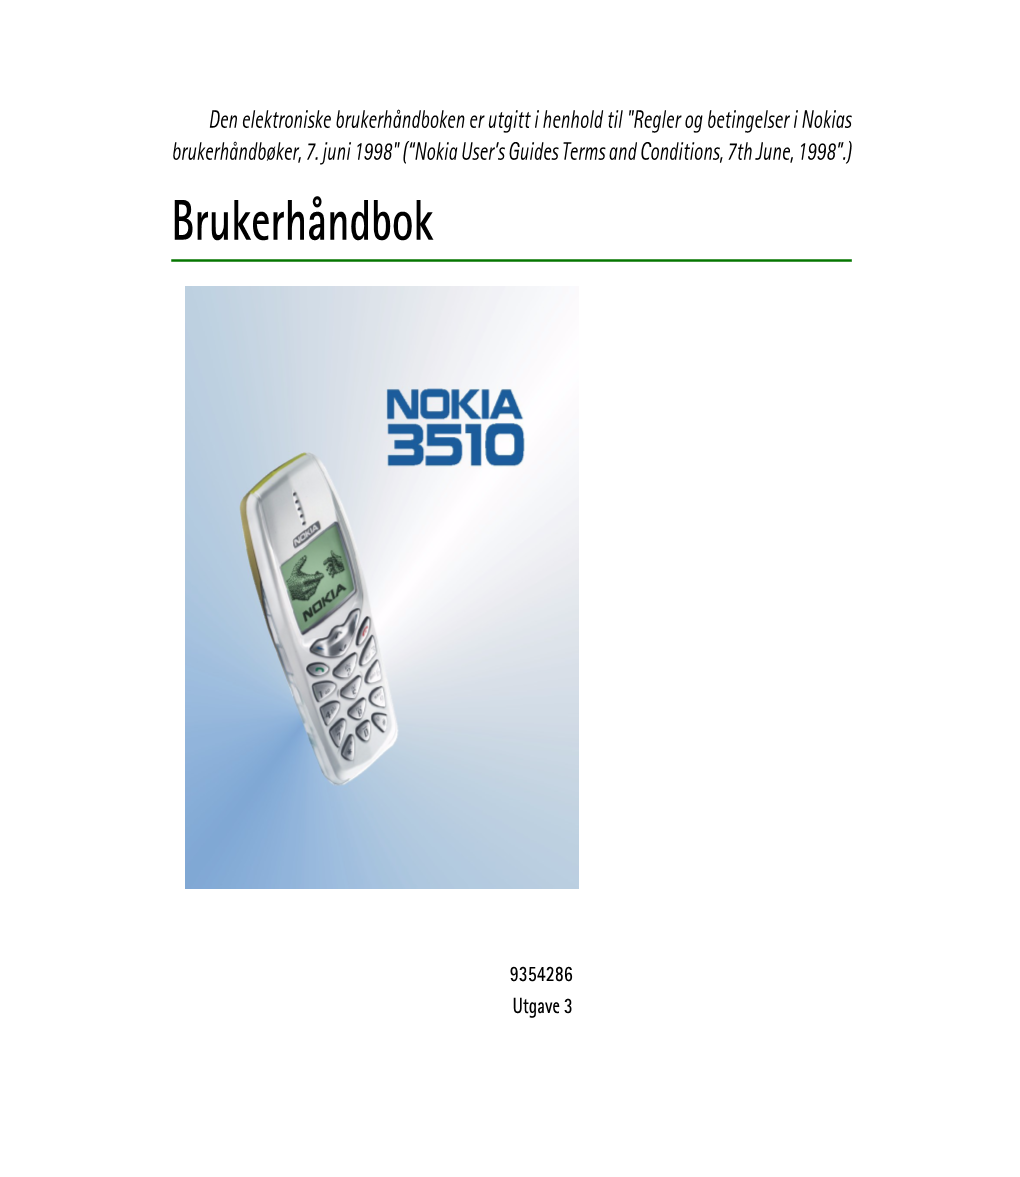 Brukerhåndboken Er Utgitt I Henhold Til "Regler Og Betingelser I Nokias Brukerhåndbøker, 7